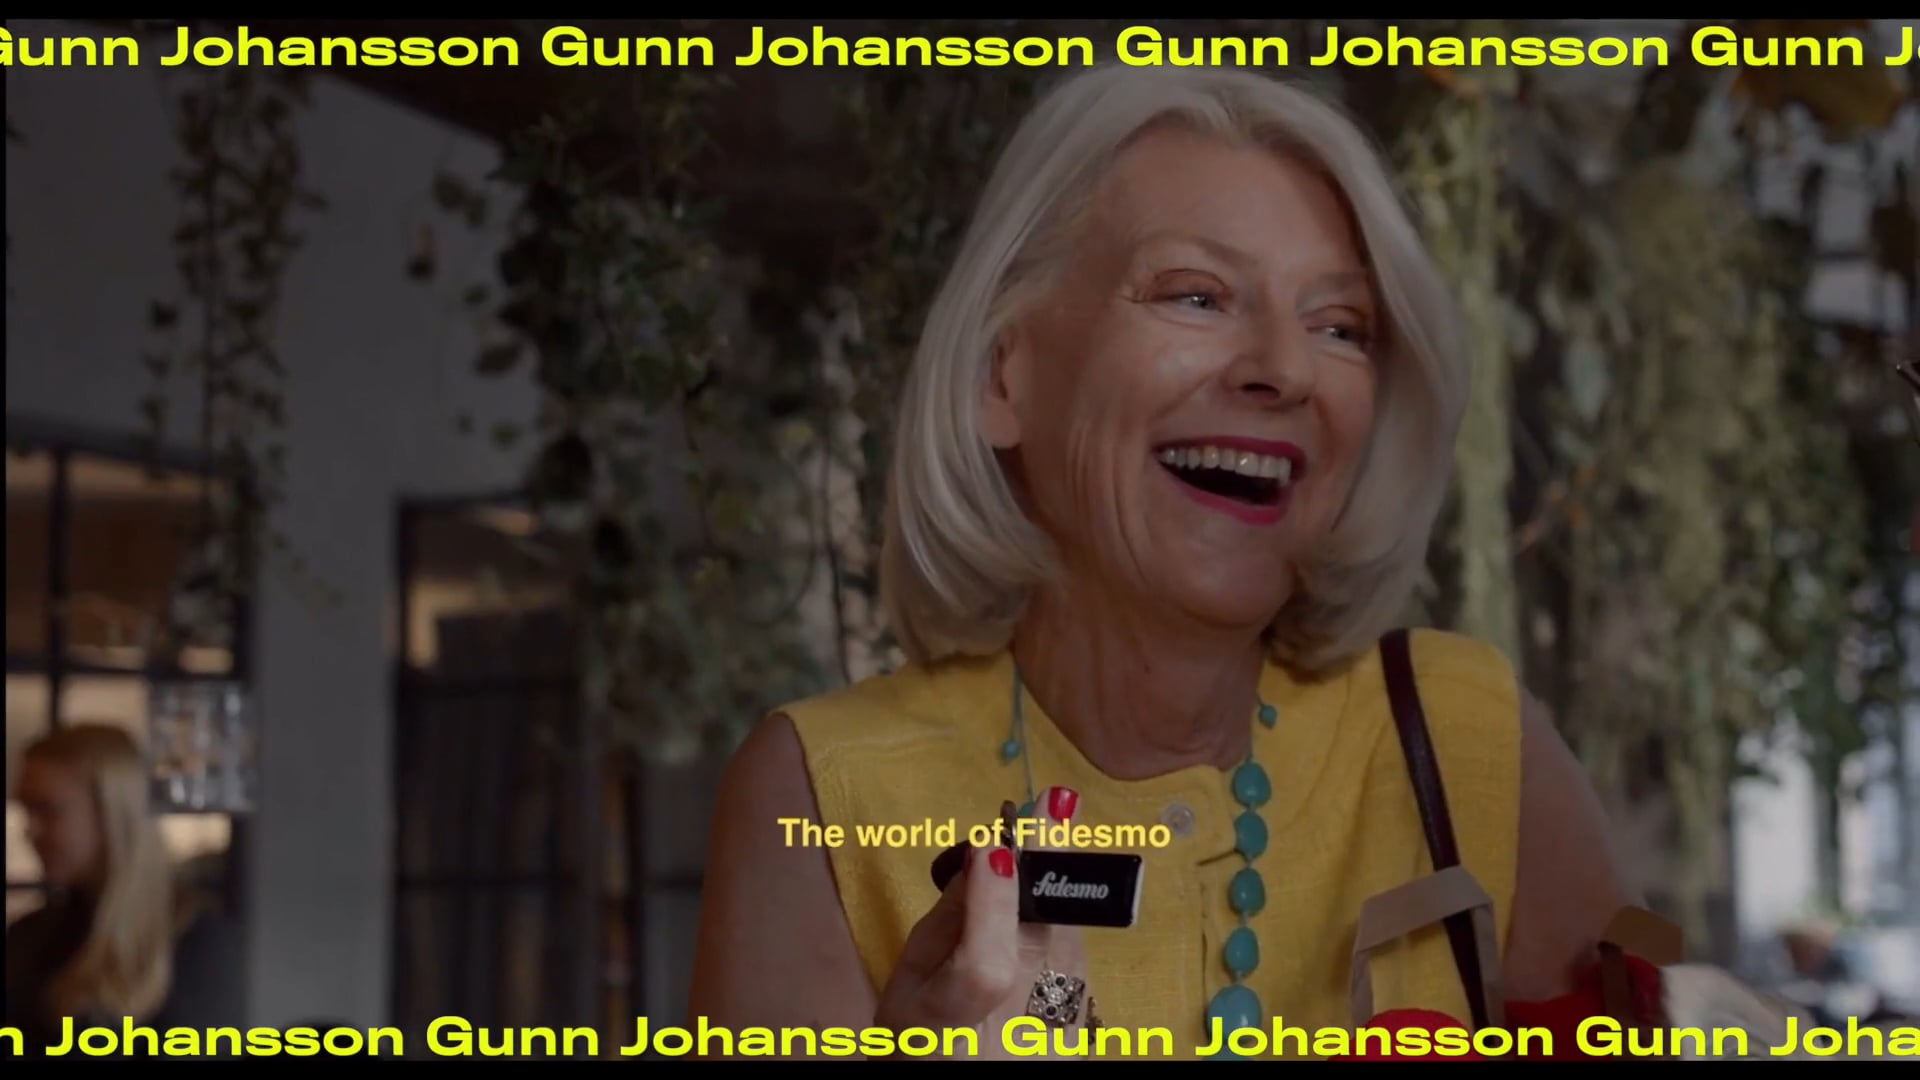 Gunn Johansson Showreel Trailer 2020